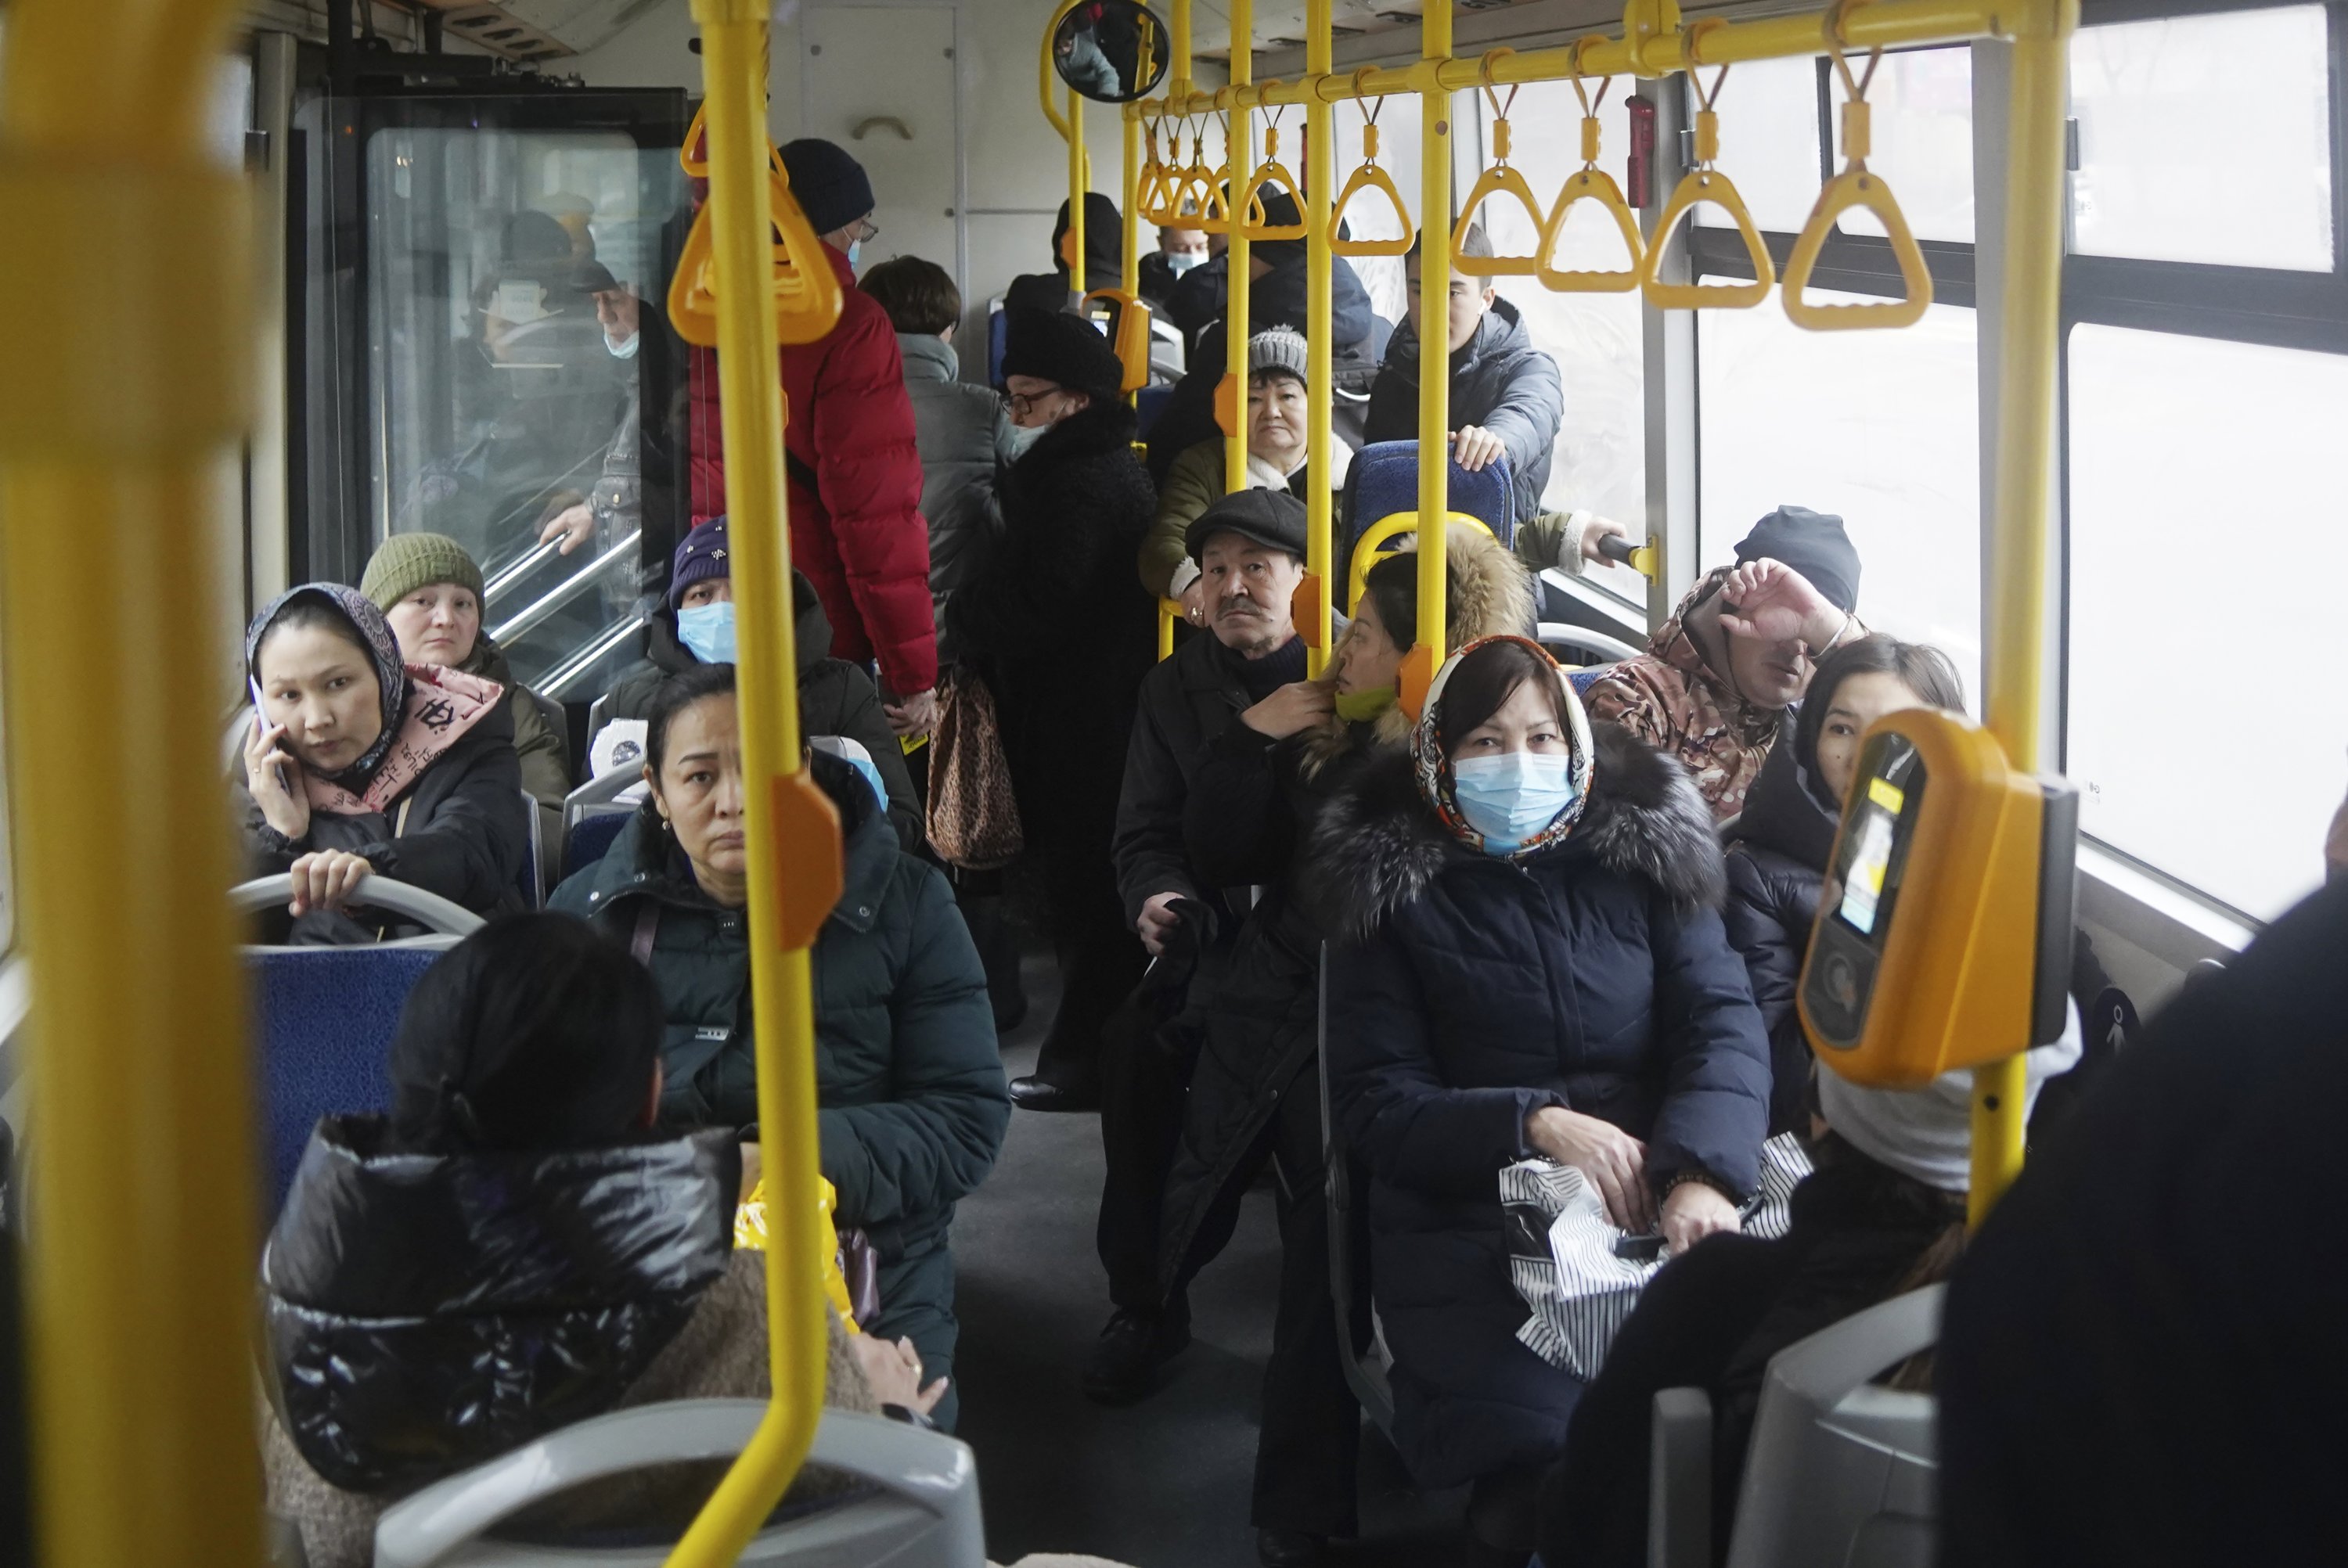 People ride a municipal bus in Almaty, Kazakhstan, Jan. 10, 2022. (AP Photo)